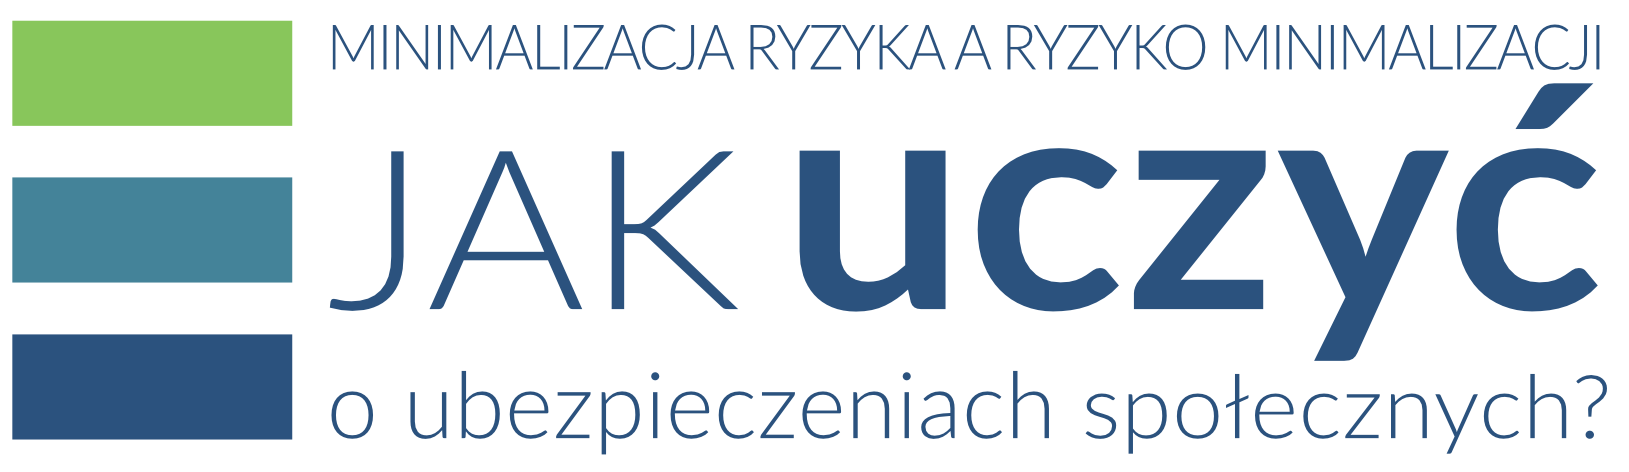 link do strony konferencji w 2018 r. - logo konferencji w Krakowie 2018 r.